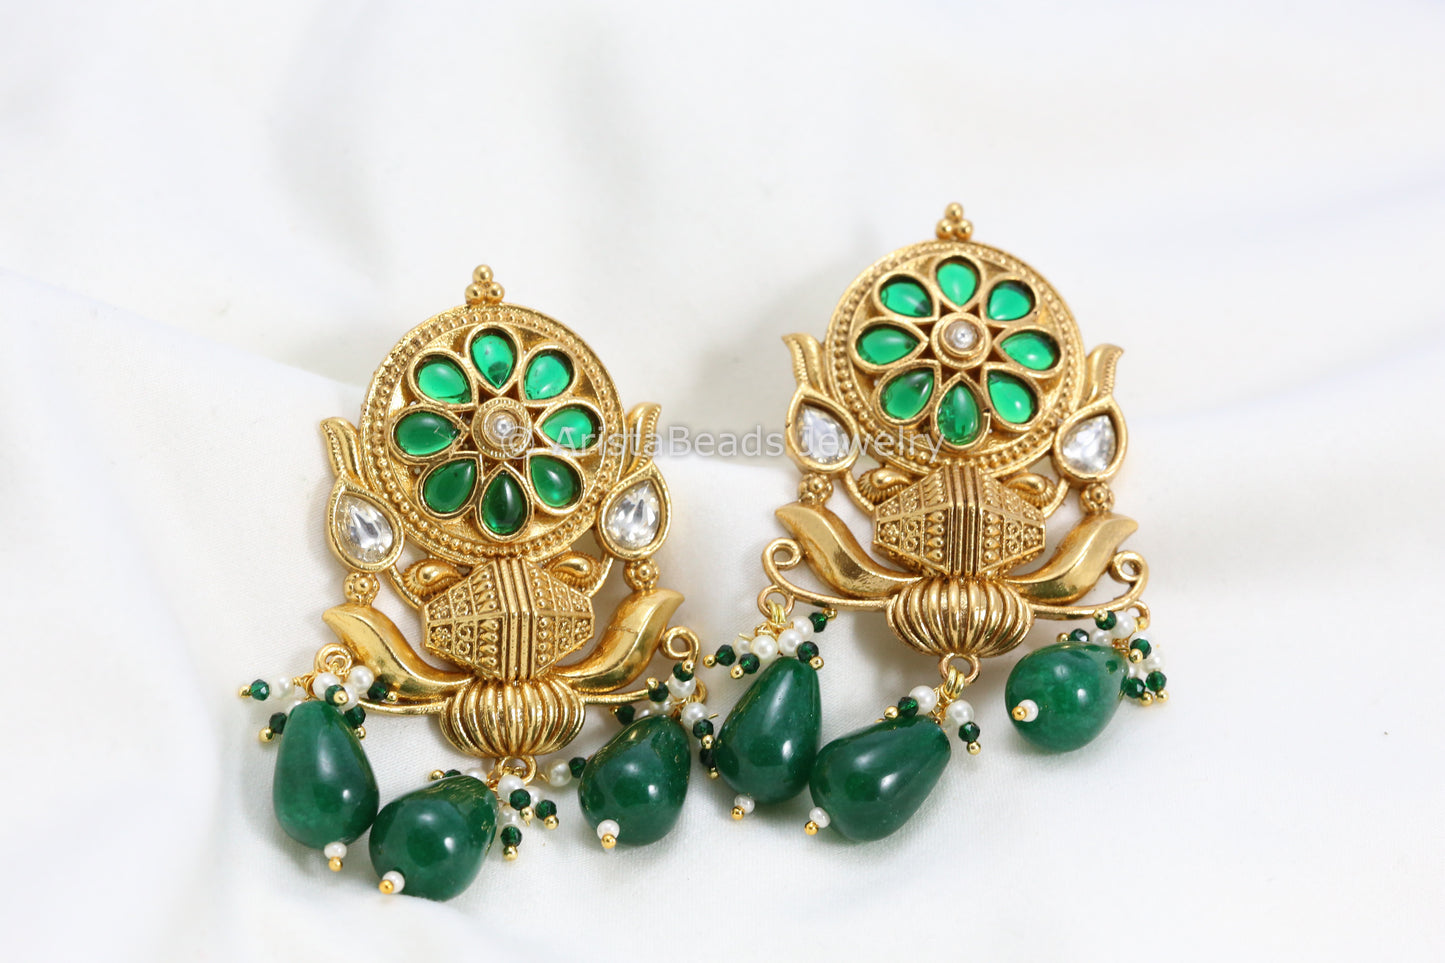 Silver Look-Alike Kundan Antique Gold Earrings - Green